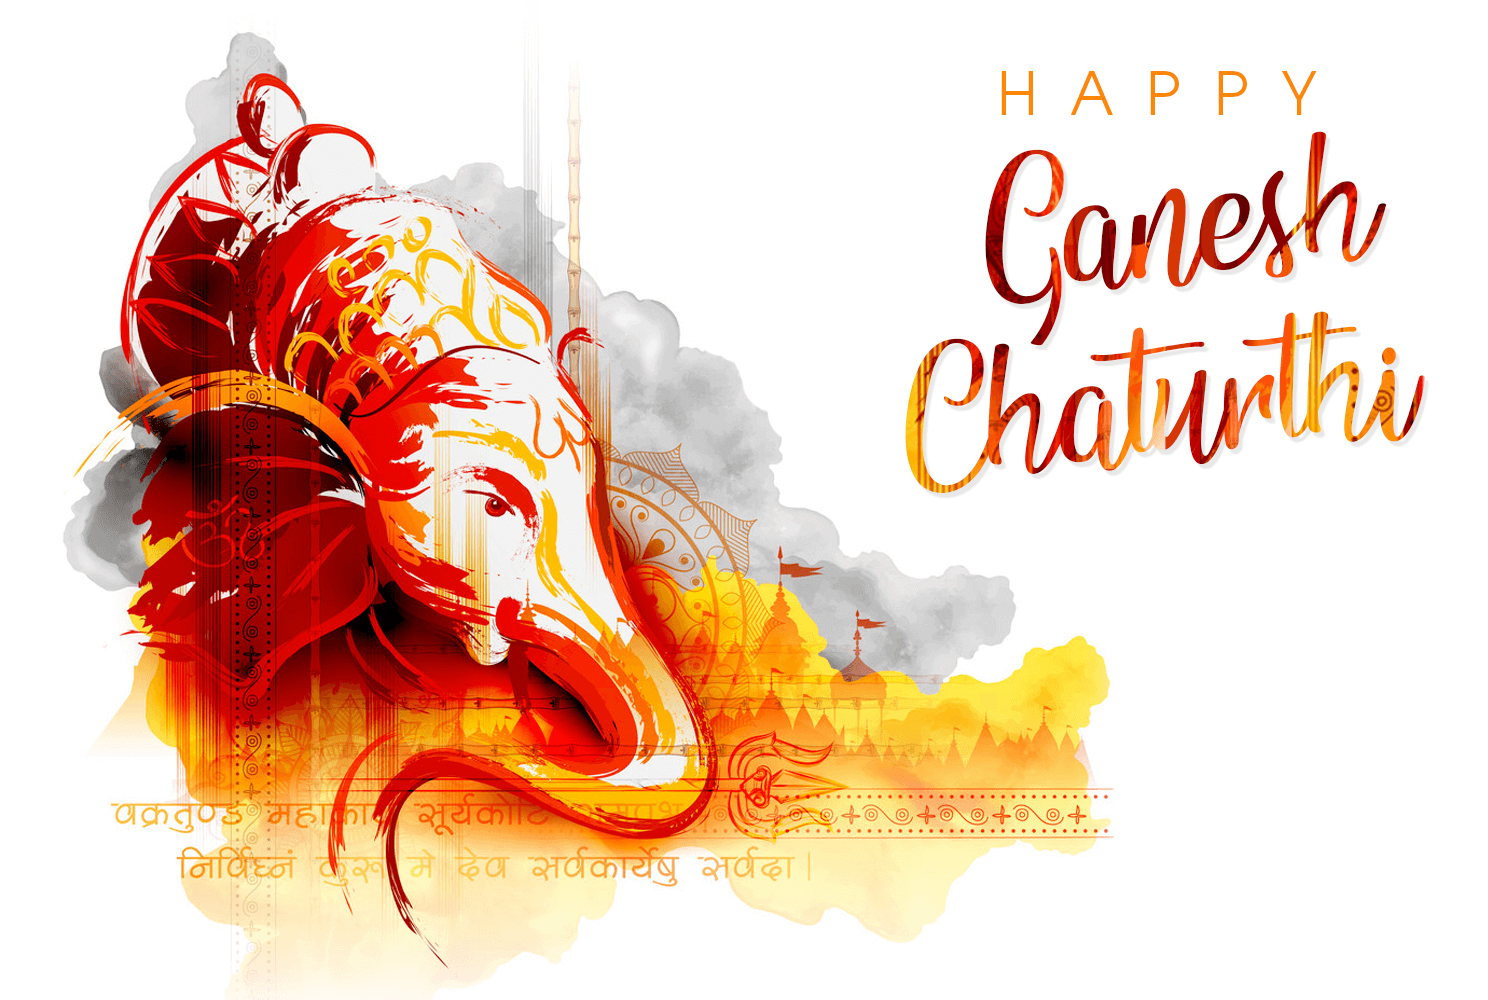 Ganesh Chaturthi 2019: Images, Wallpapers, WhatsApp Status & Wishes of  Vinayaka Chaturthi | CGfrog